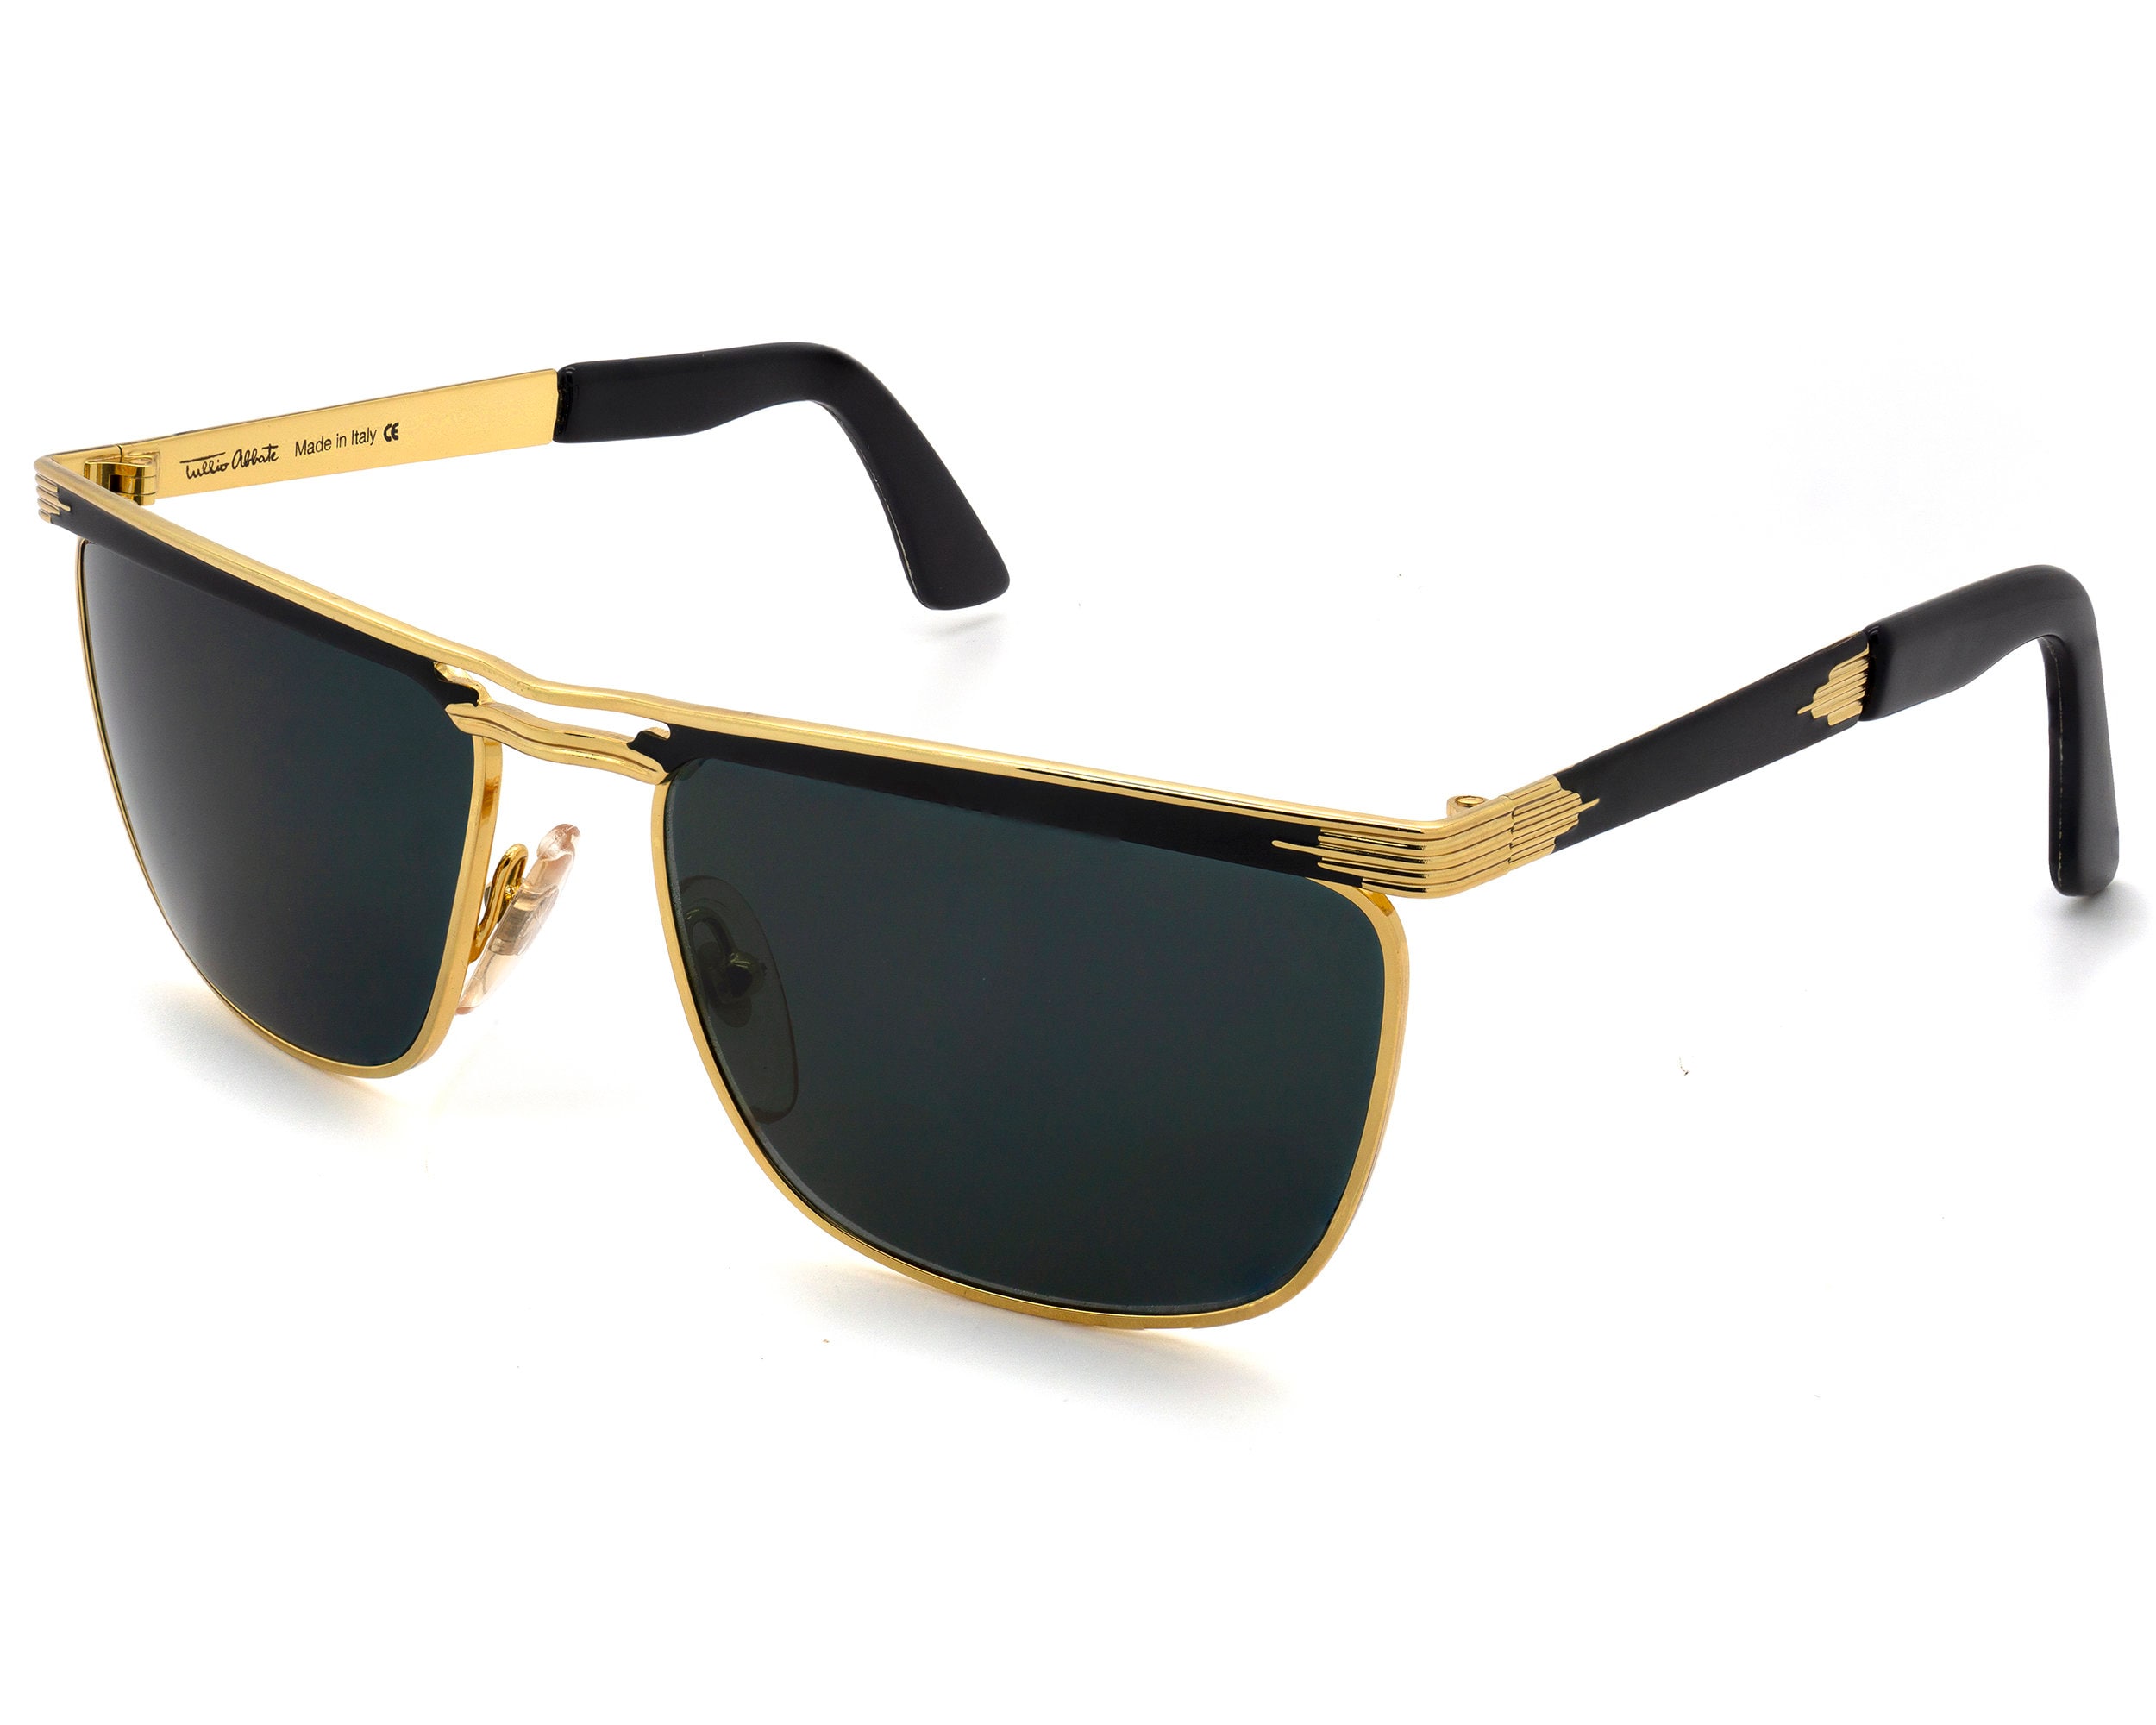 Tullio Abbate 80s Sunglasses Made in Italy. Original Vintage 